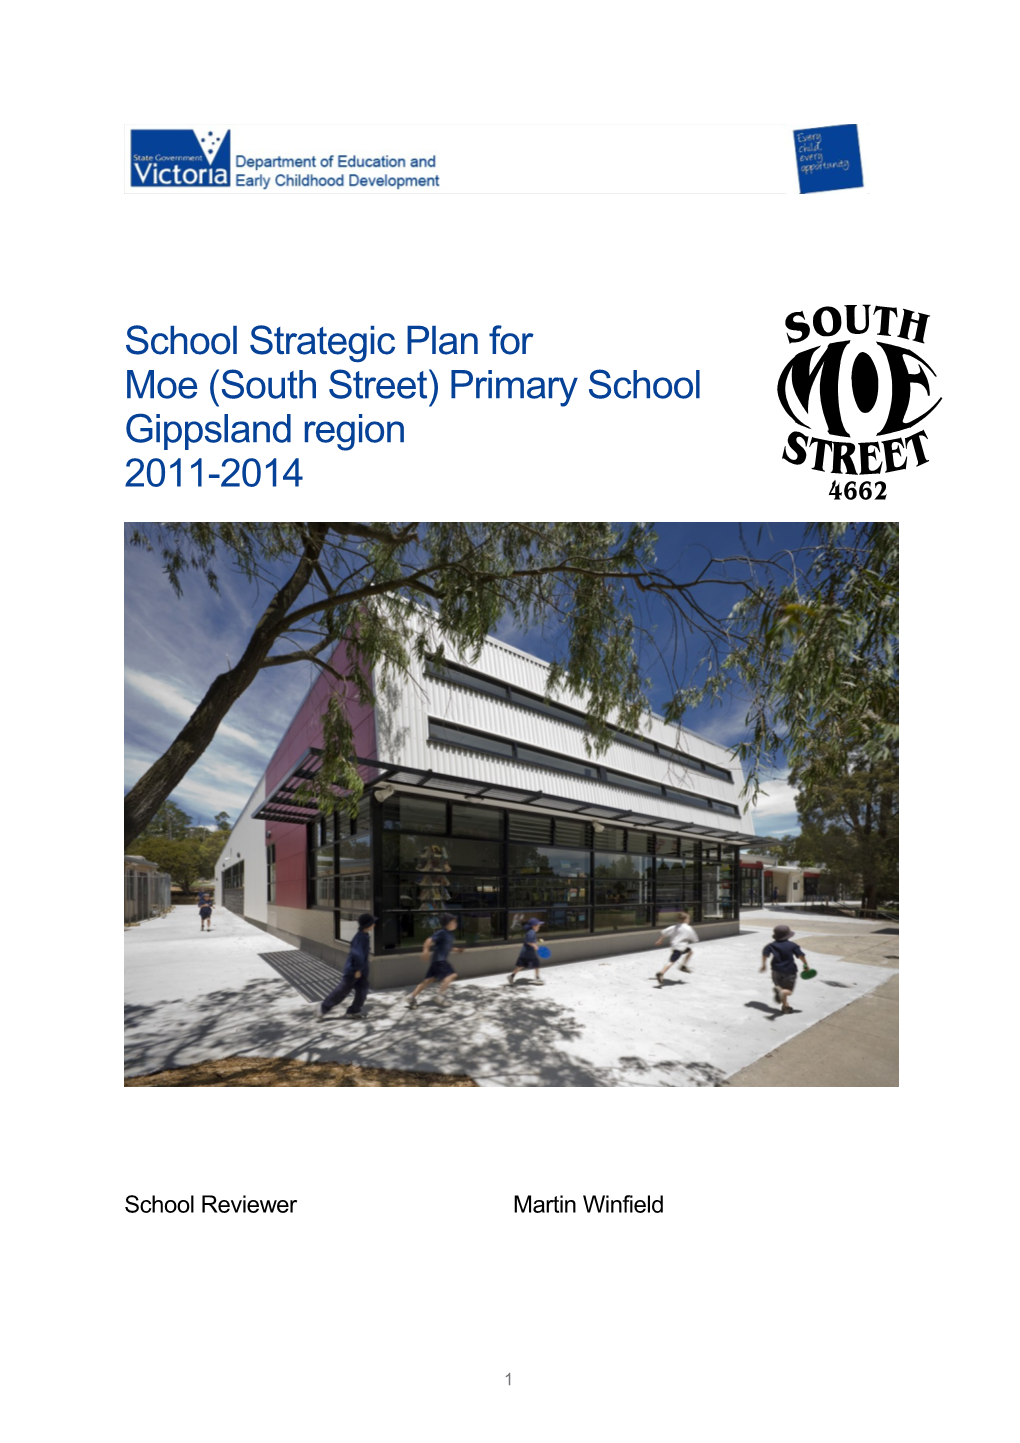 Moe (South Street) Primary School